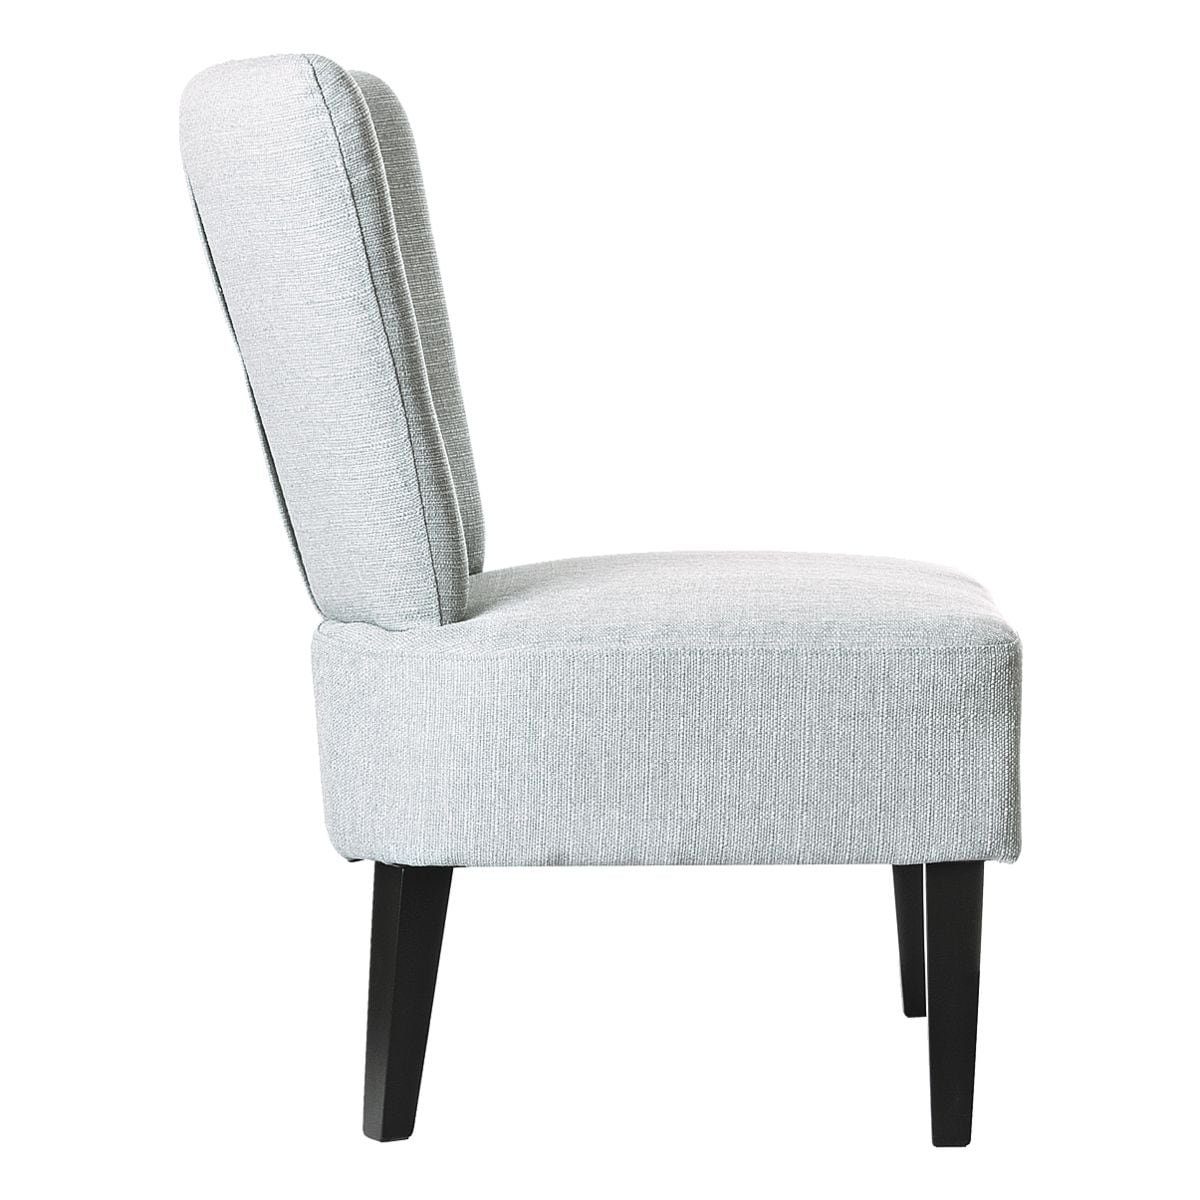 PAPERFLOW Sessel Brighton, grau Vintage-Look, Sitzfläche, extrabreite Holzfüße im